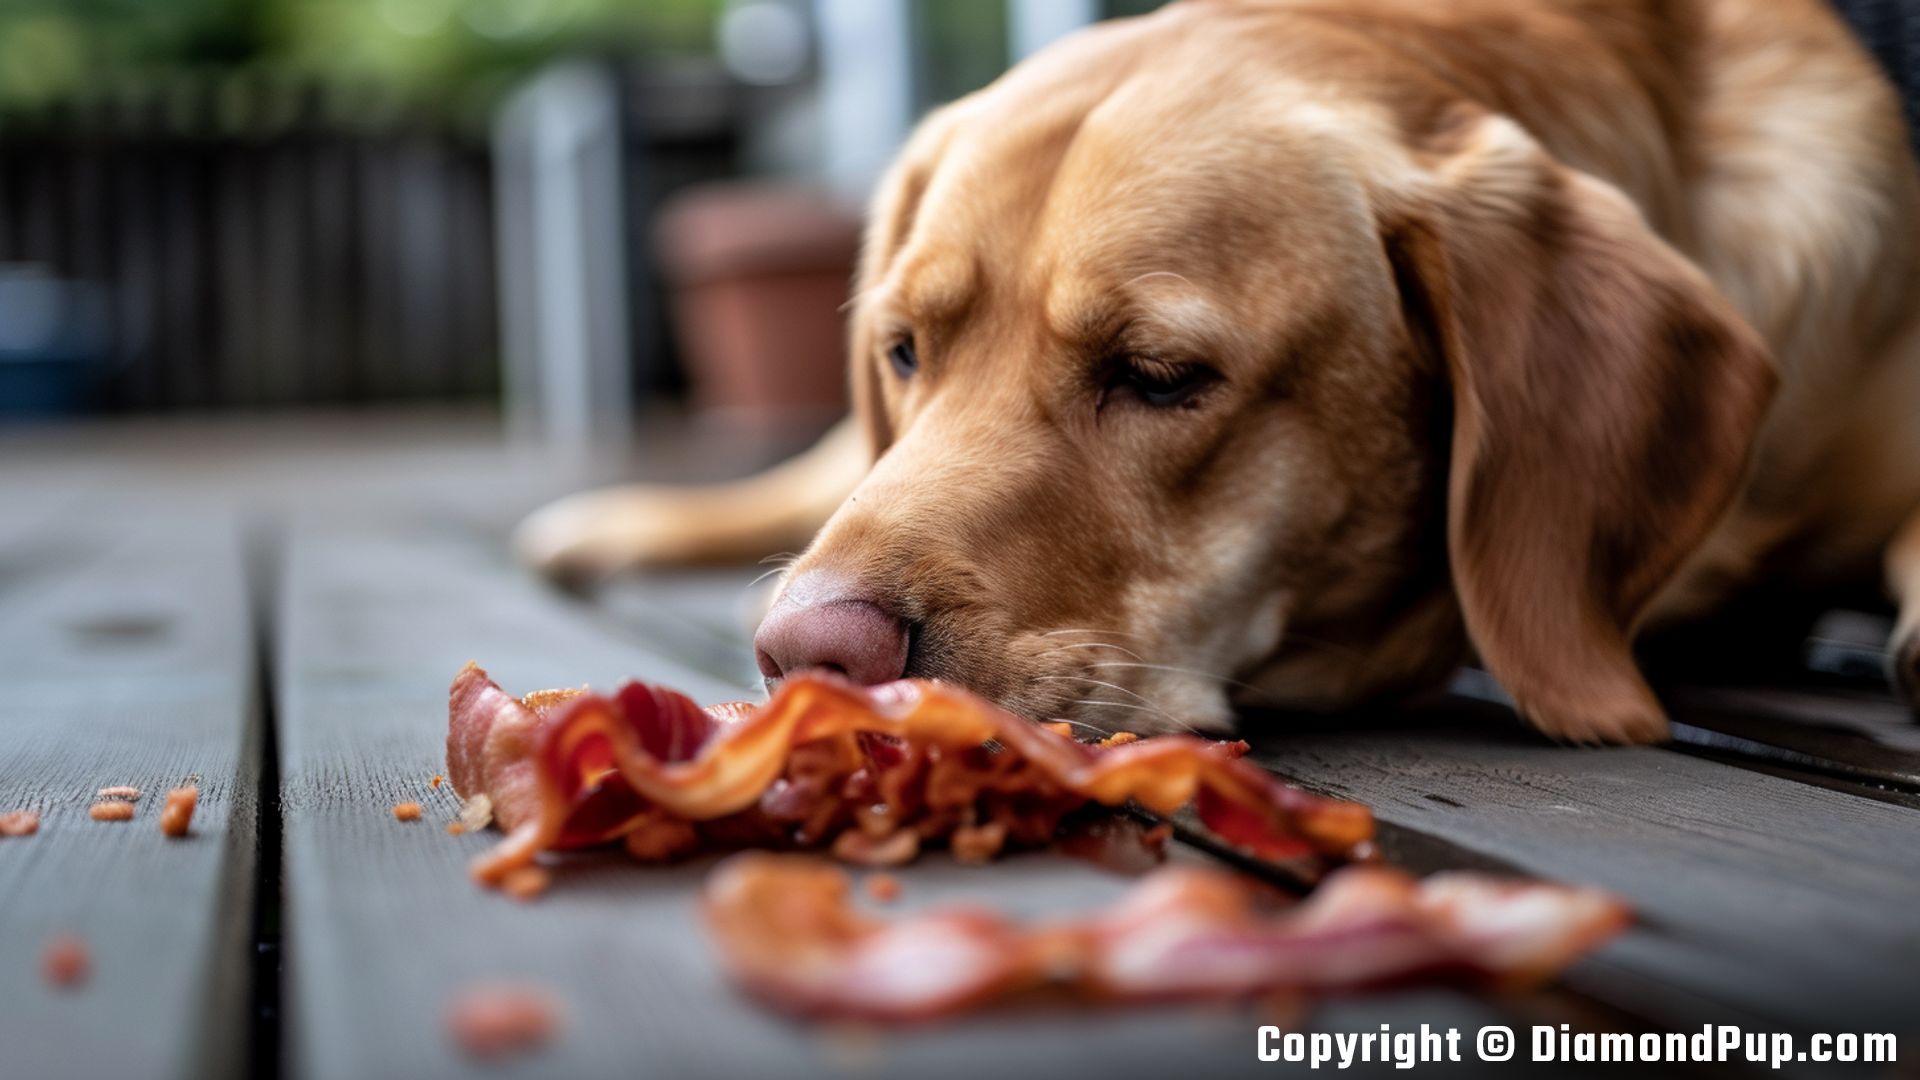 Photograph of a Cute Labrador Eating Bacon